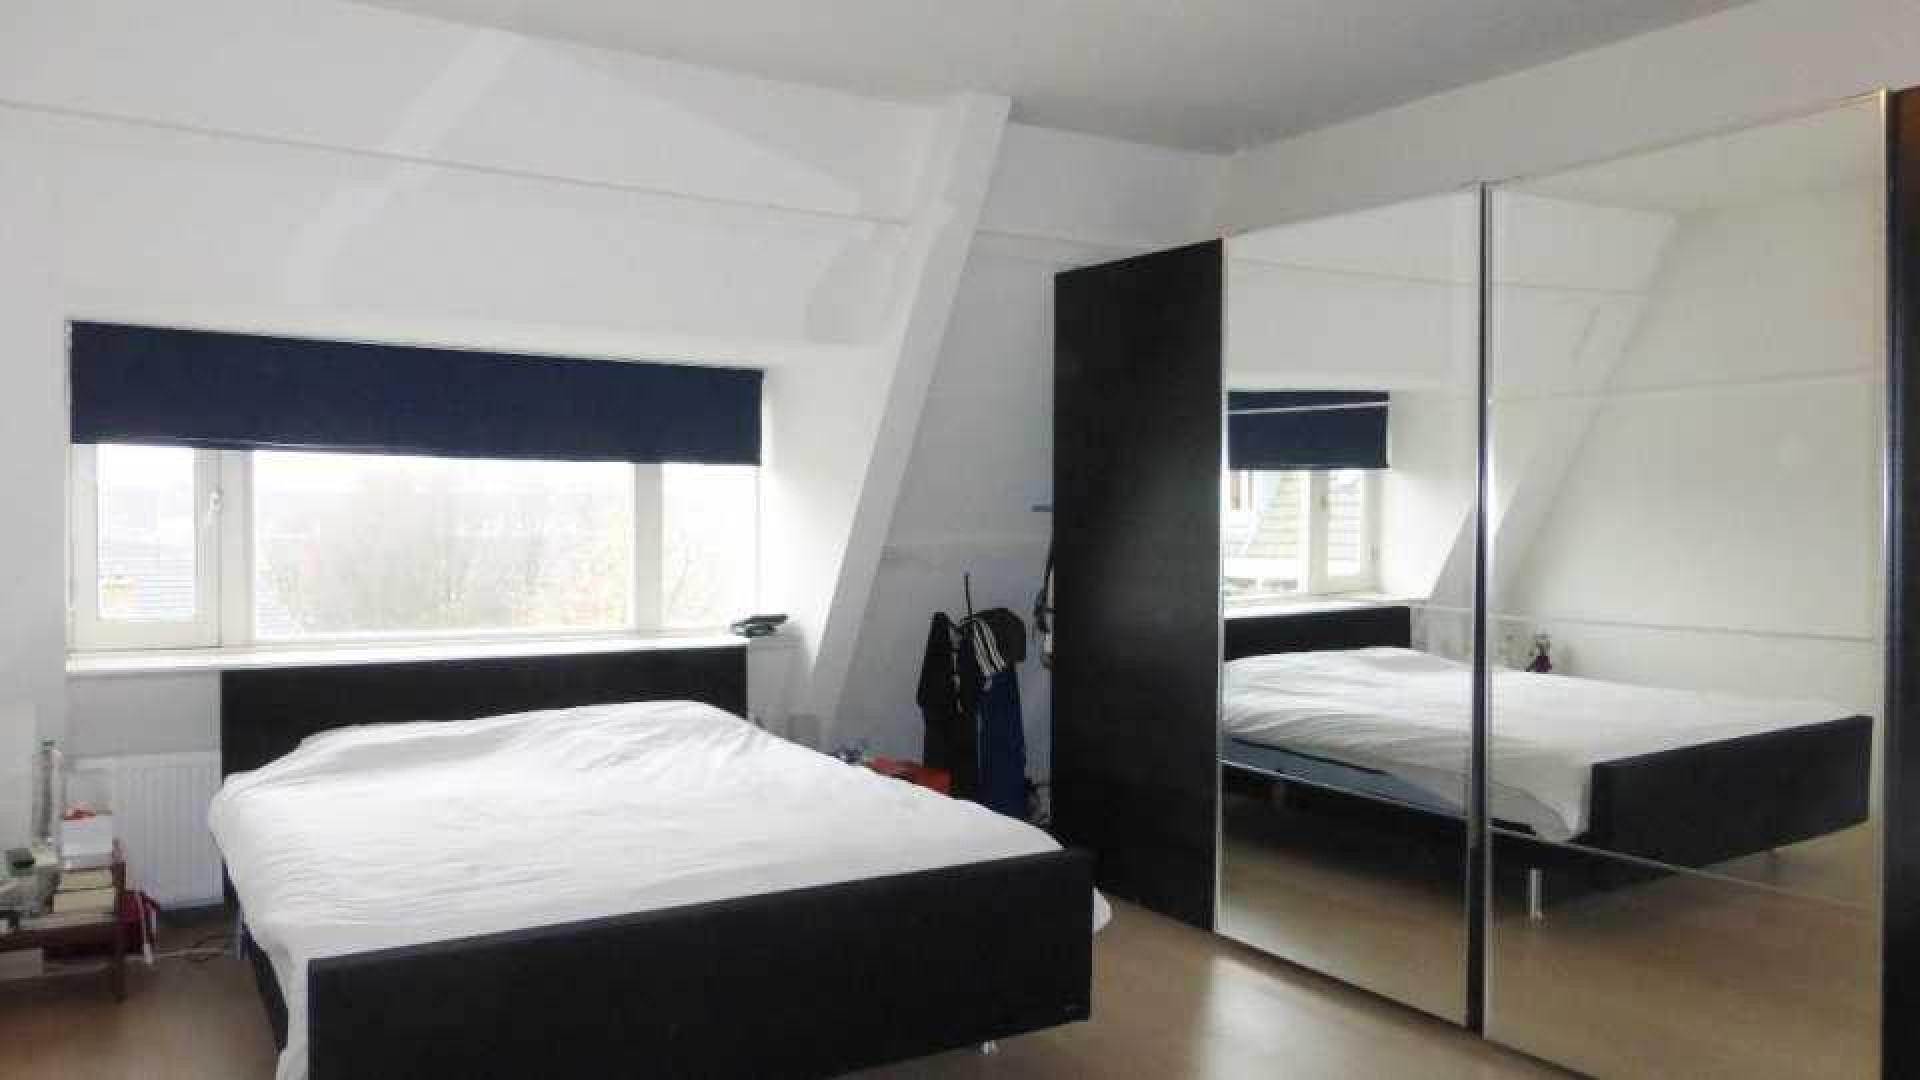 PSV voetballer Siem de Jong zet zijn appartement in Amsterdam Oud Zuid te huur. Zie foto's 7